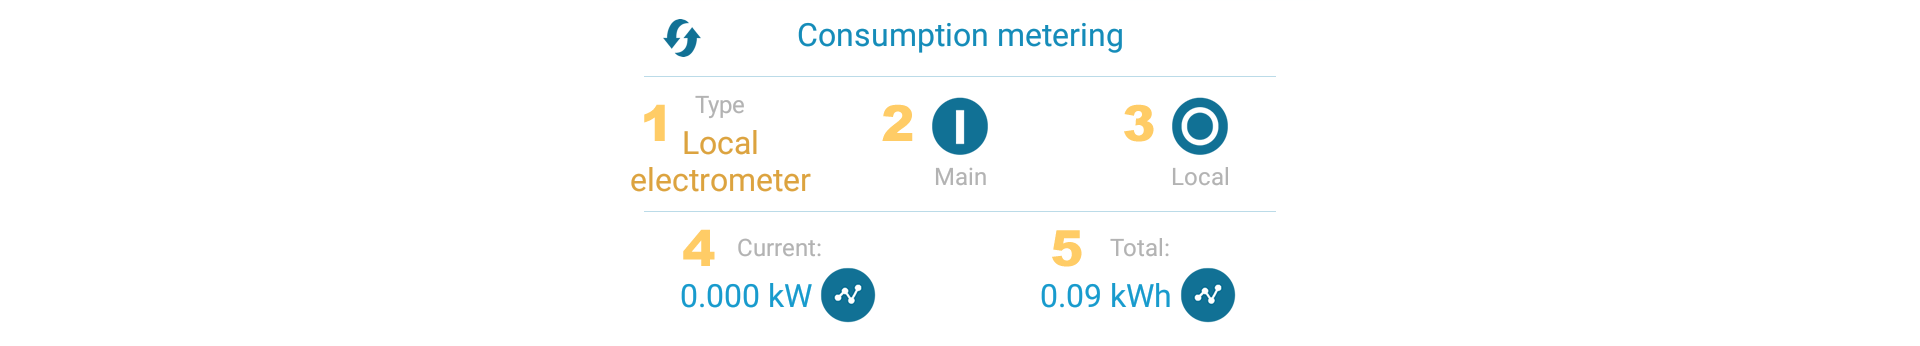 consumption metering